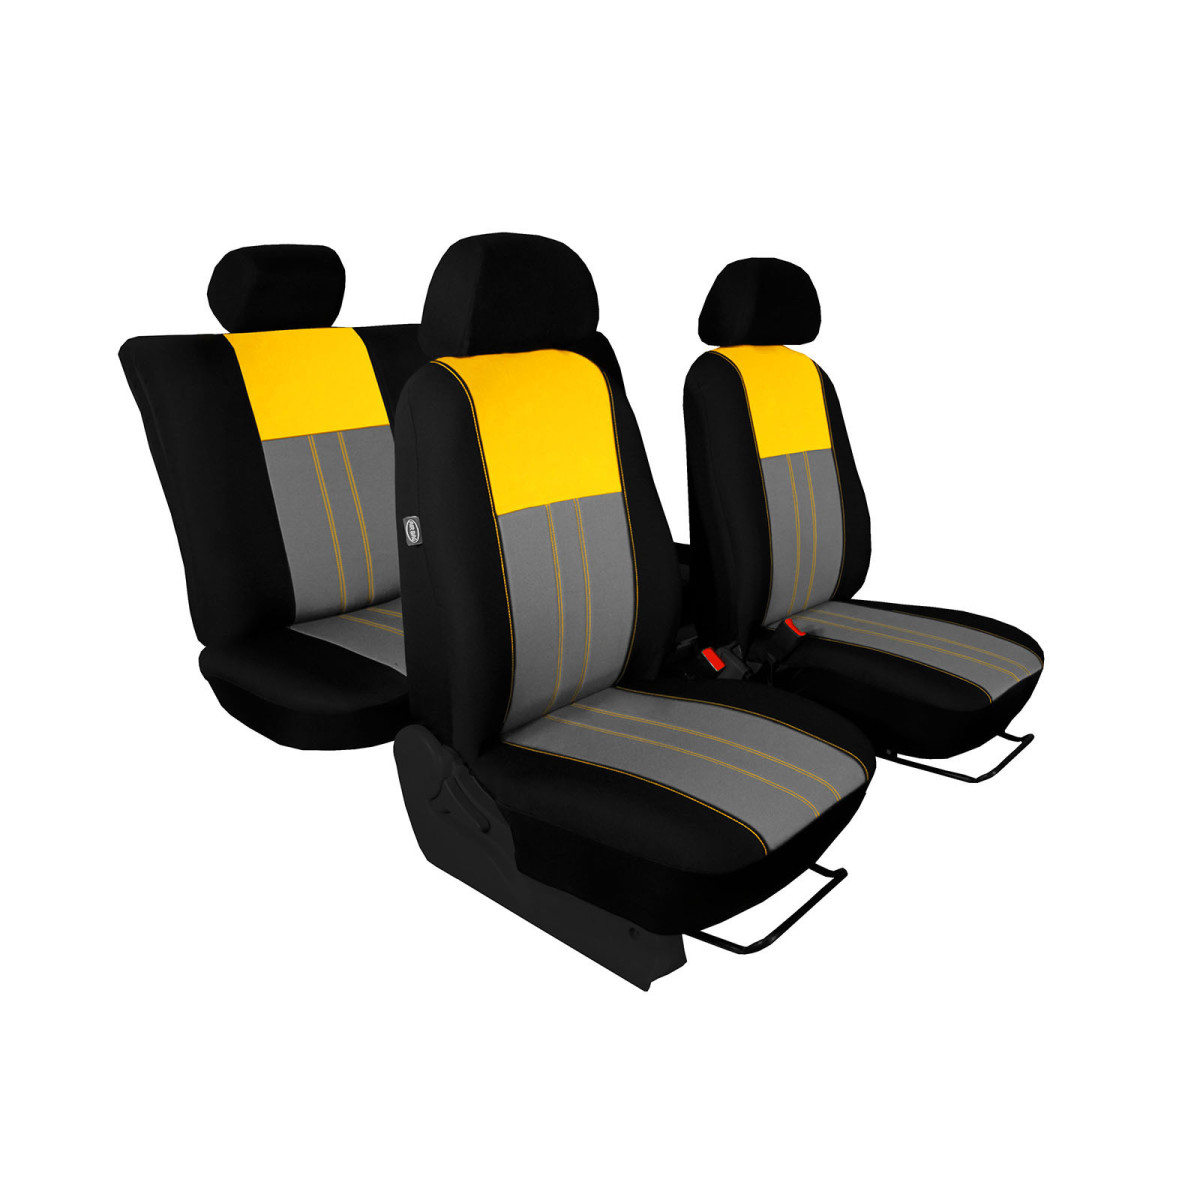 Sitzbezug 3-Sitzer für Berlingo, Partner und Combo mit Aussparung für  Lordosenstütze auf der Innenseite Fahrersitz.